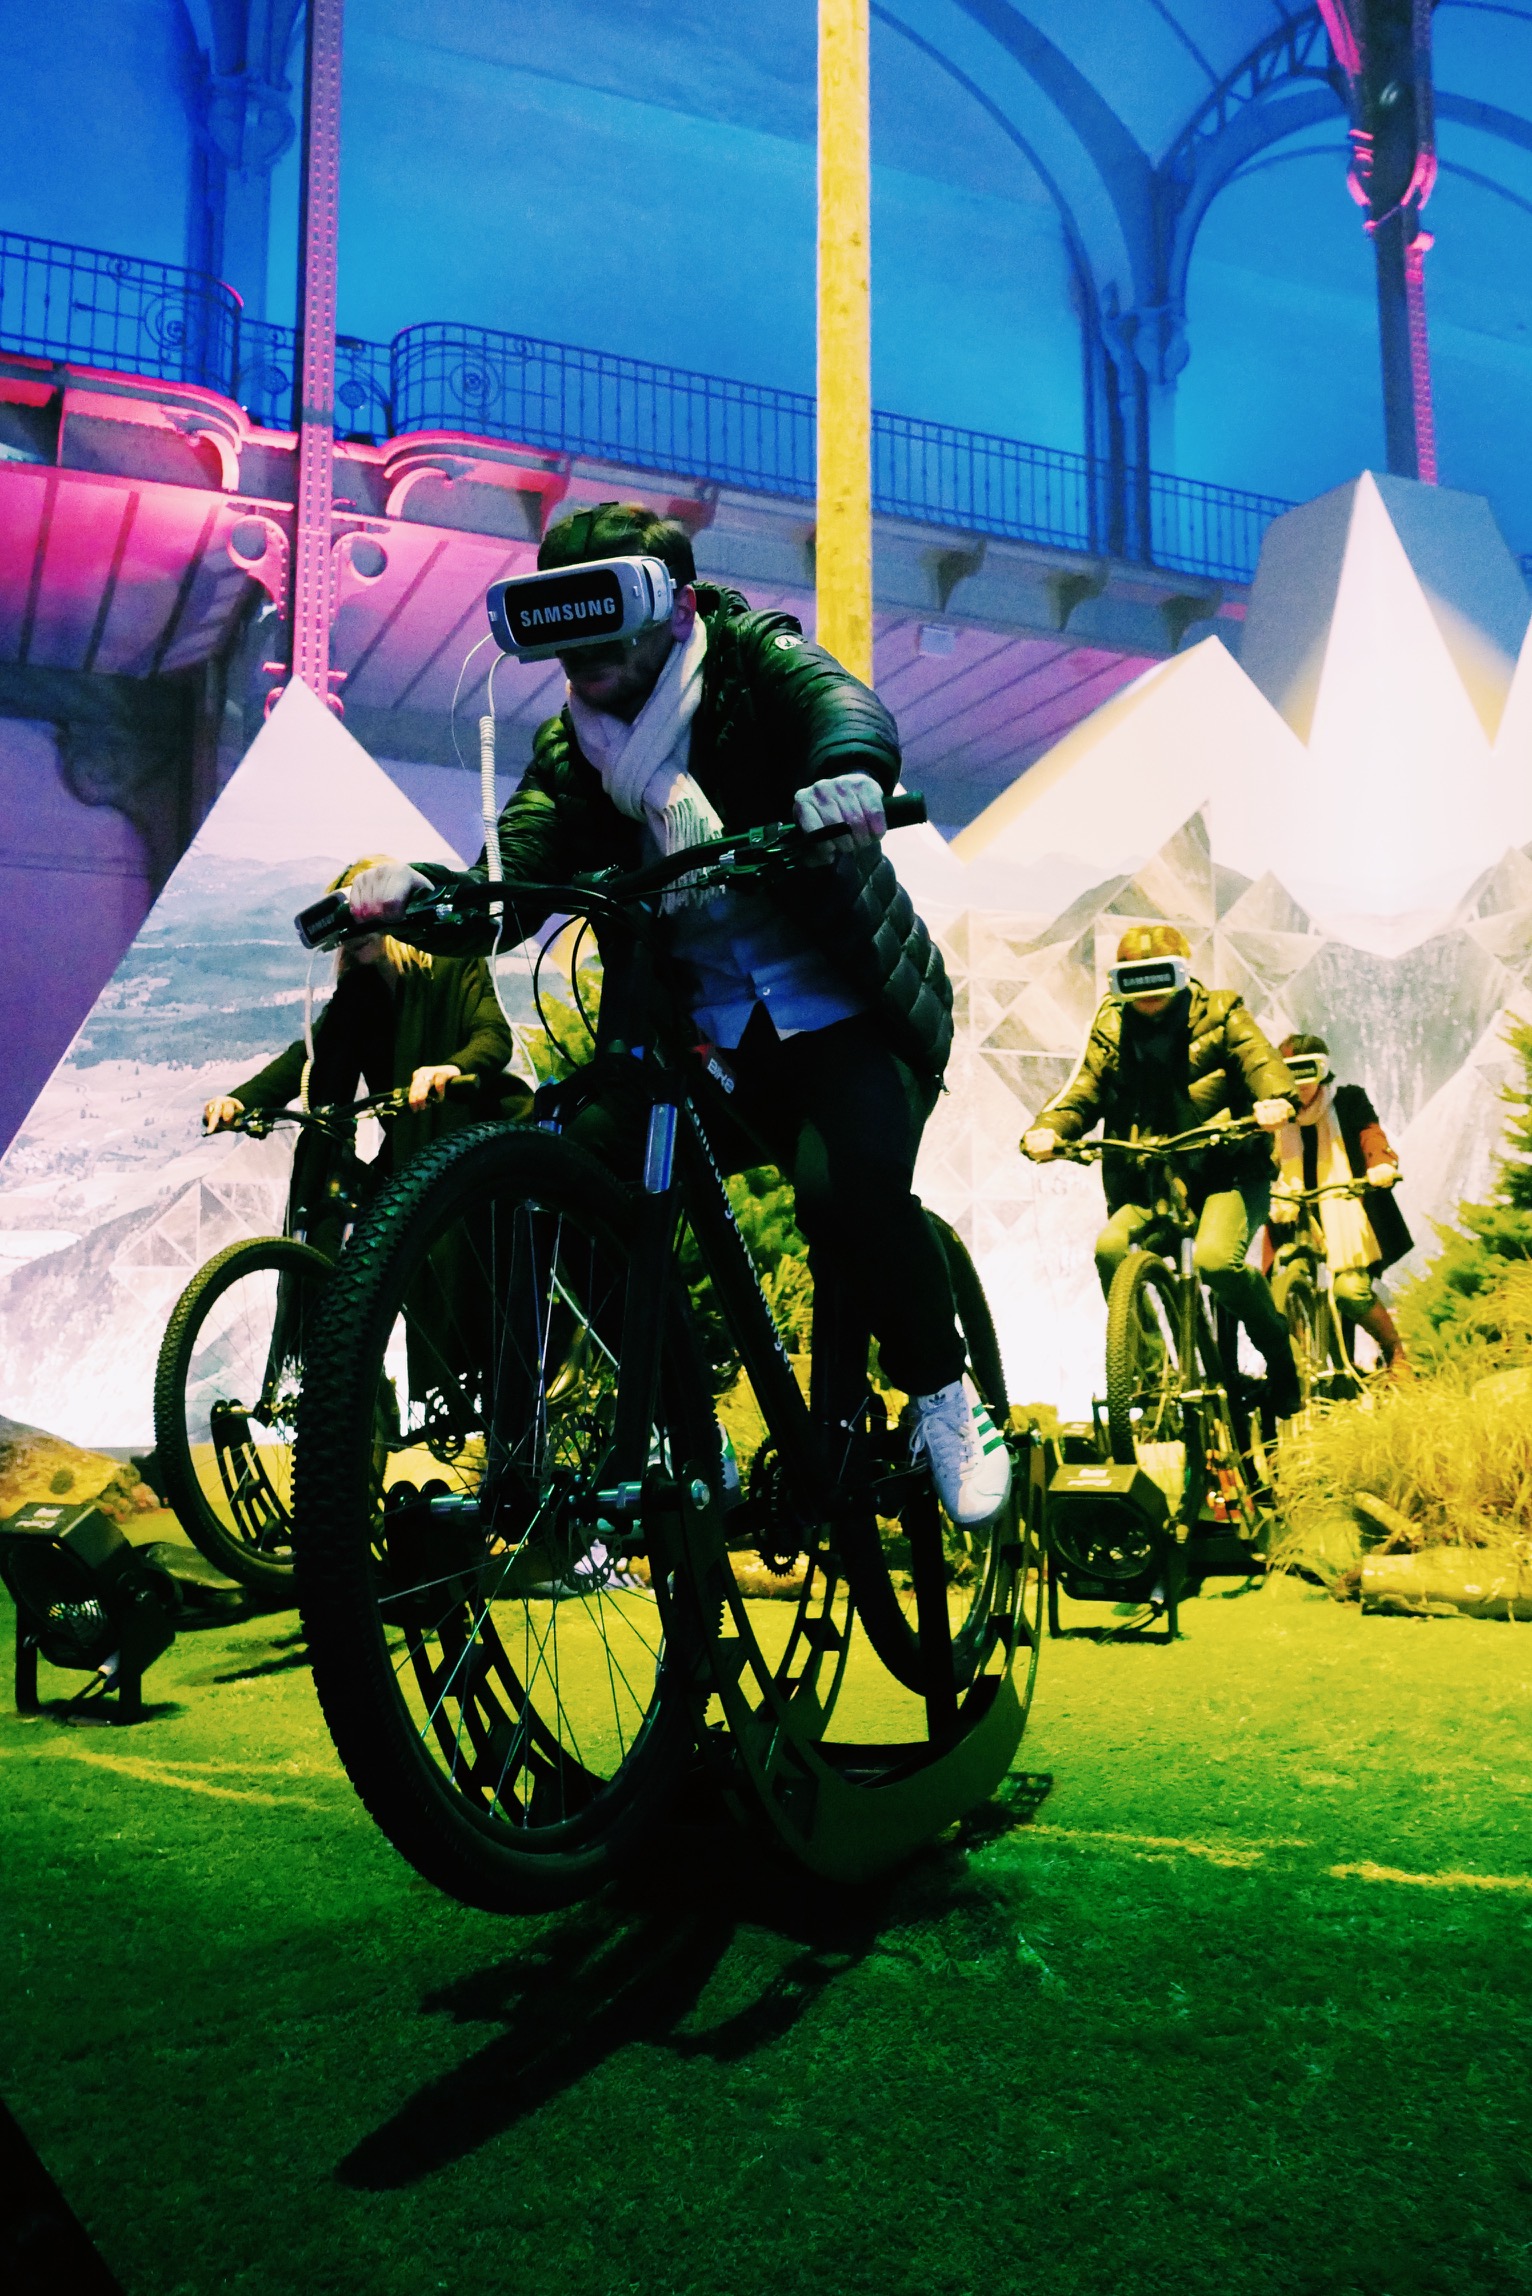 Moutain-Bike-Gear-VR-Samsung-Life-Changer-Park-parc-réalité-virtuelle-Grand-Palais-des-Glaces-Paris-photos-usofparis-blog